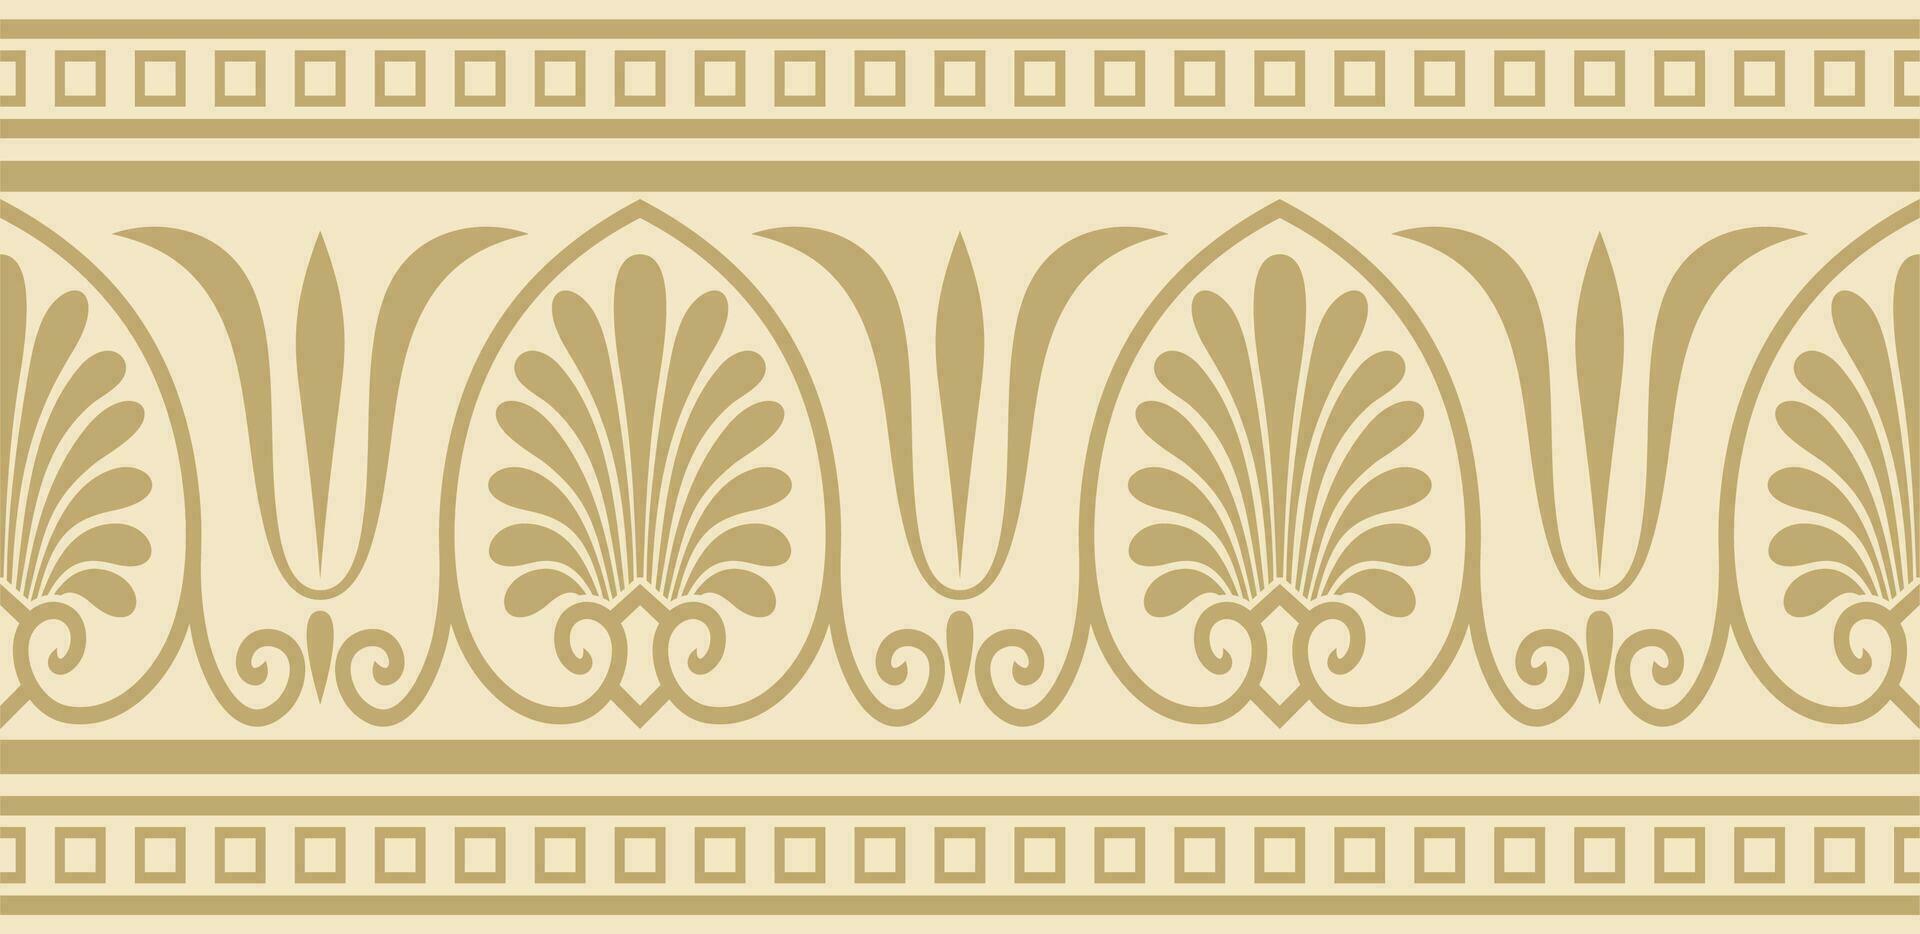 vetor dourado desatado clássico grego ornamento. sem fim europeu padronizar. fronteira, quadro, Armação antigo Grécia, romano Império